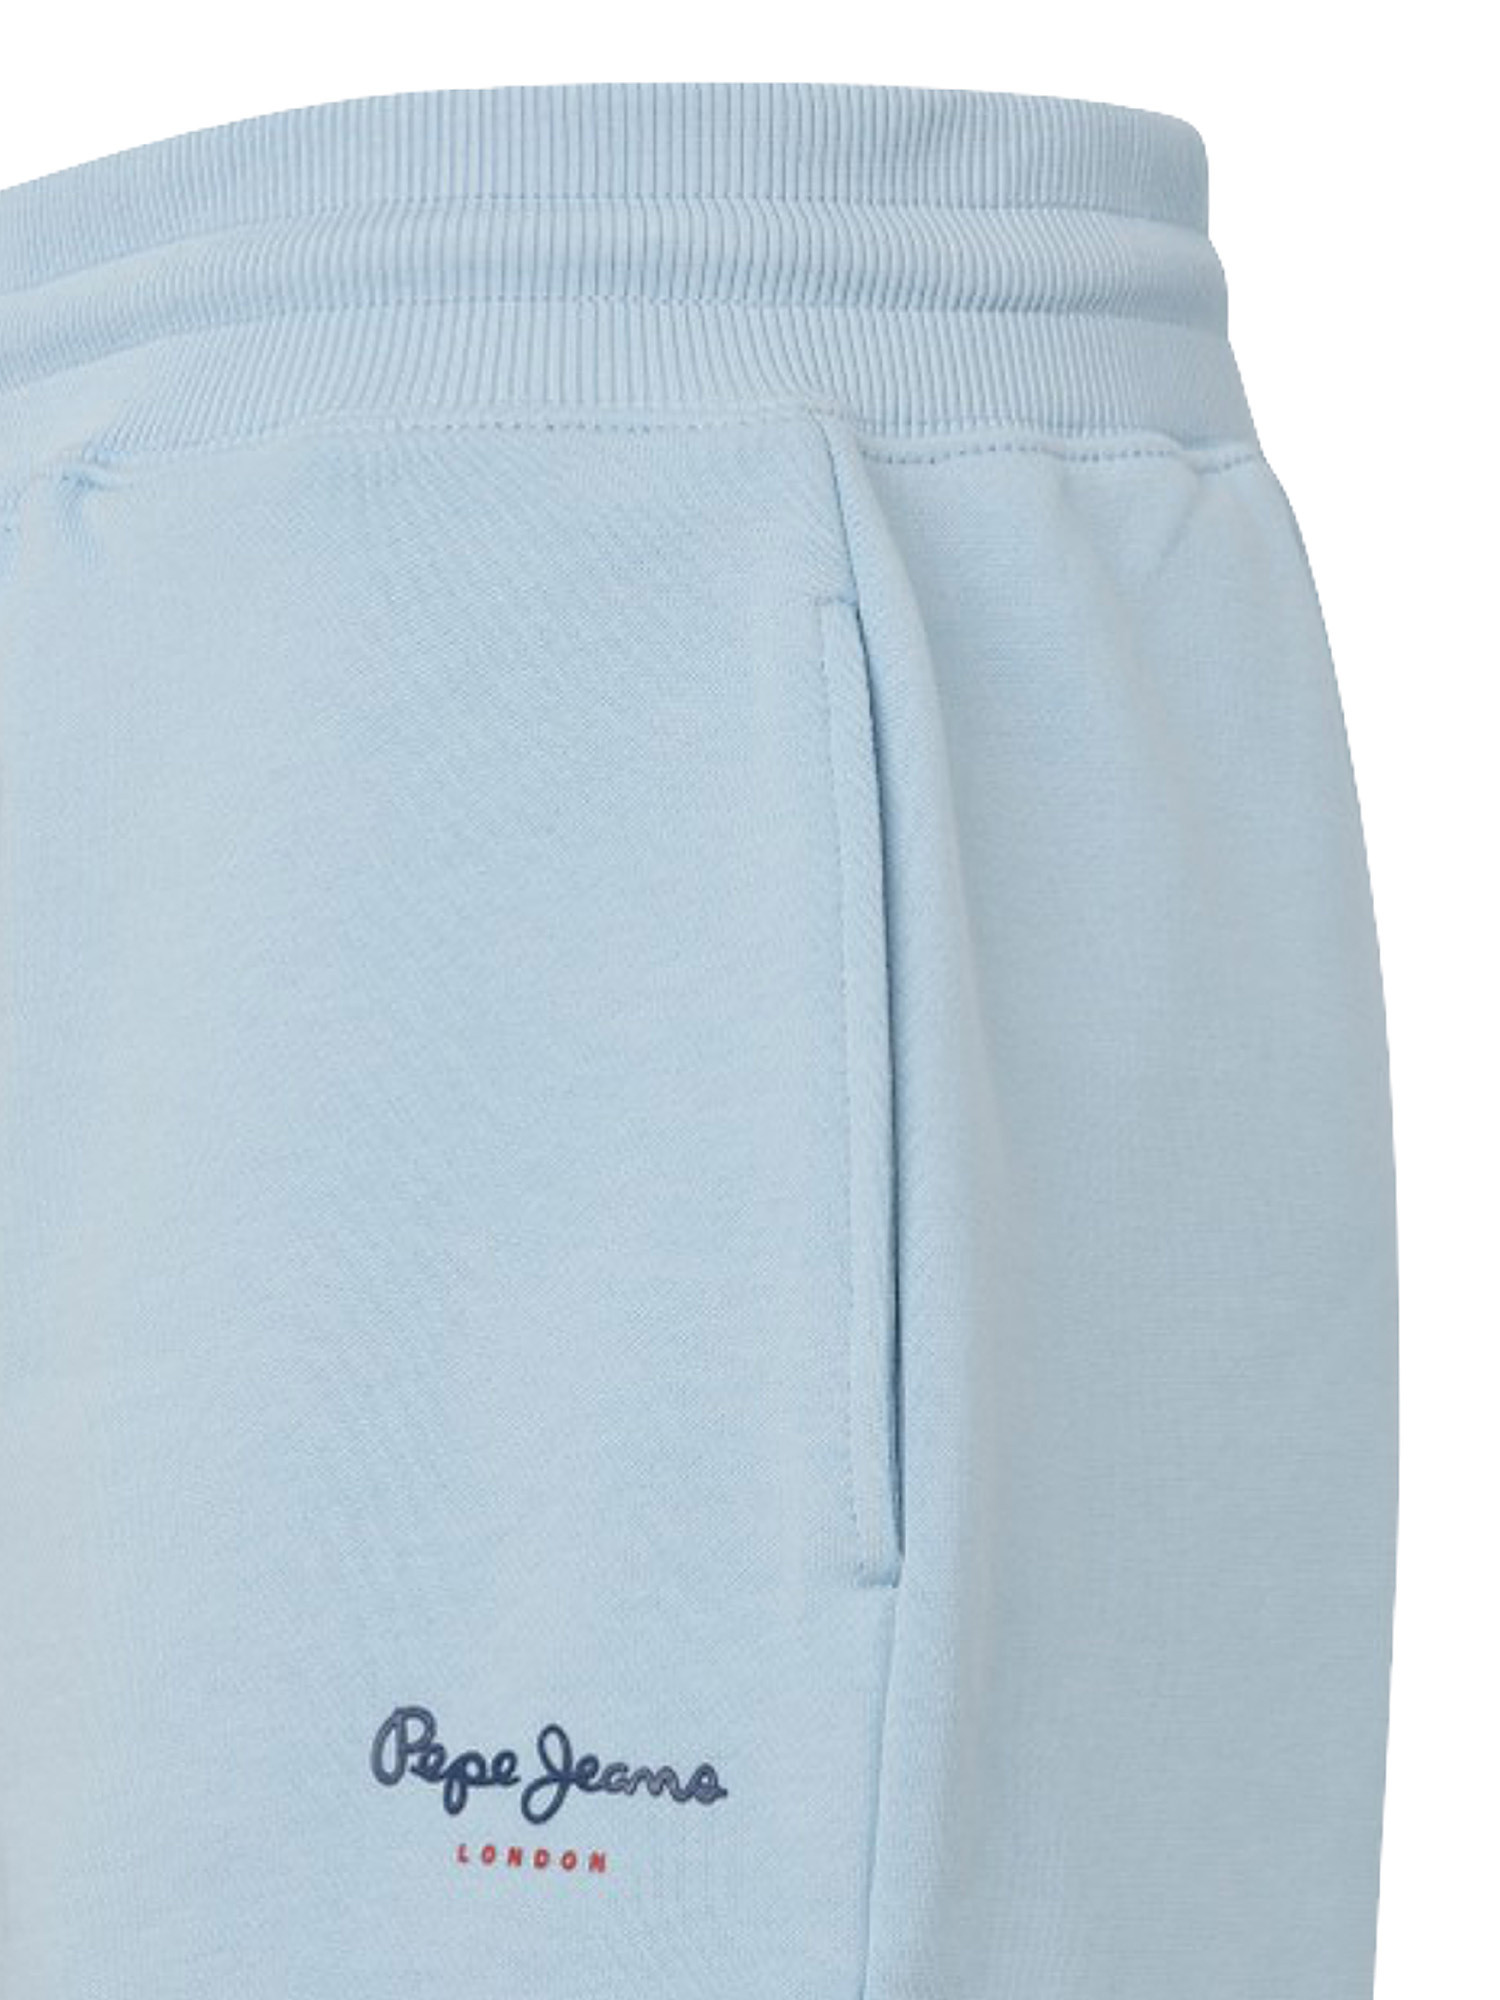 Shorts with elastic waist, Blue Celeste, large image number 2